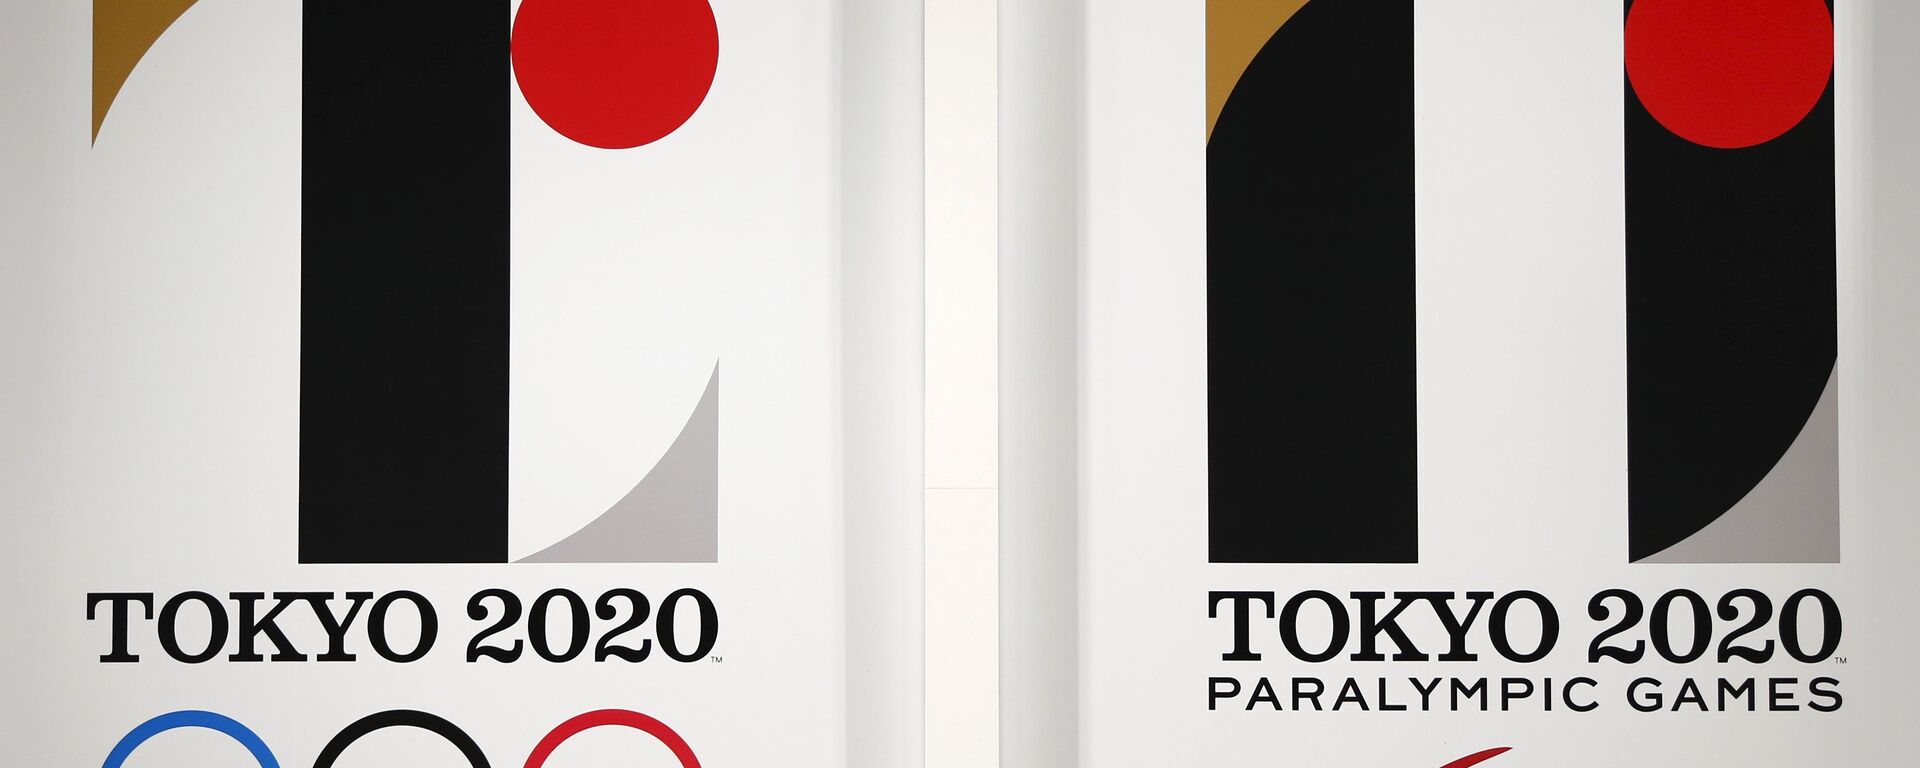 Logos de los Juegos Olímpicos y Paralímpicos de Tokio 2020 - Sputnik Mundo, 1920, 17.02.2020